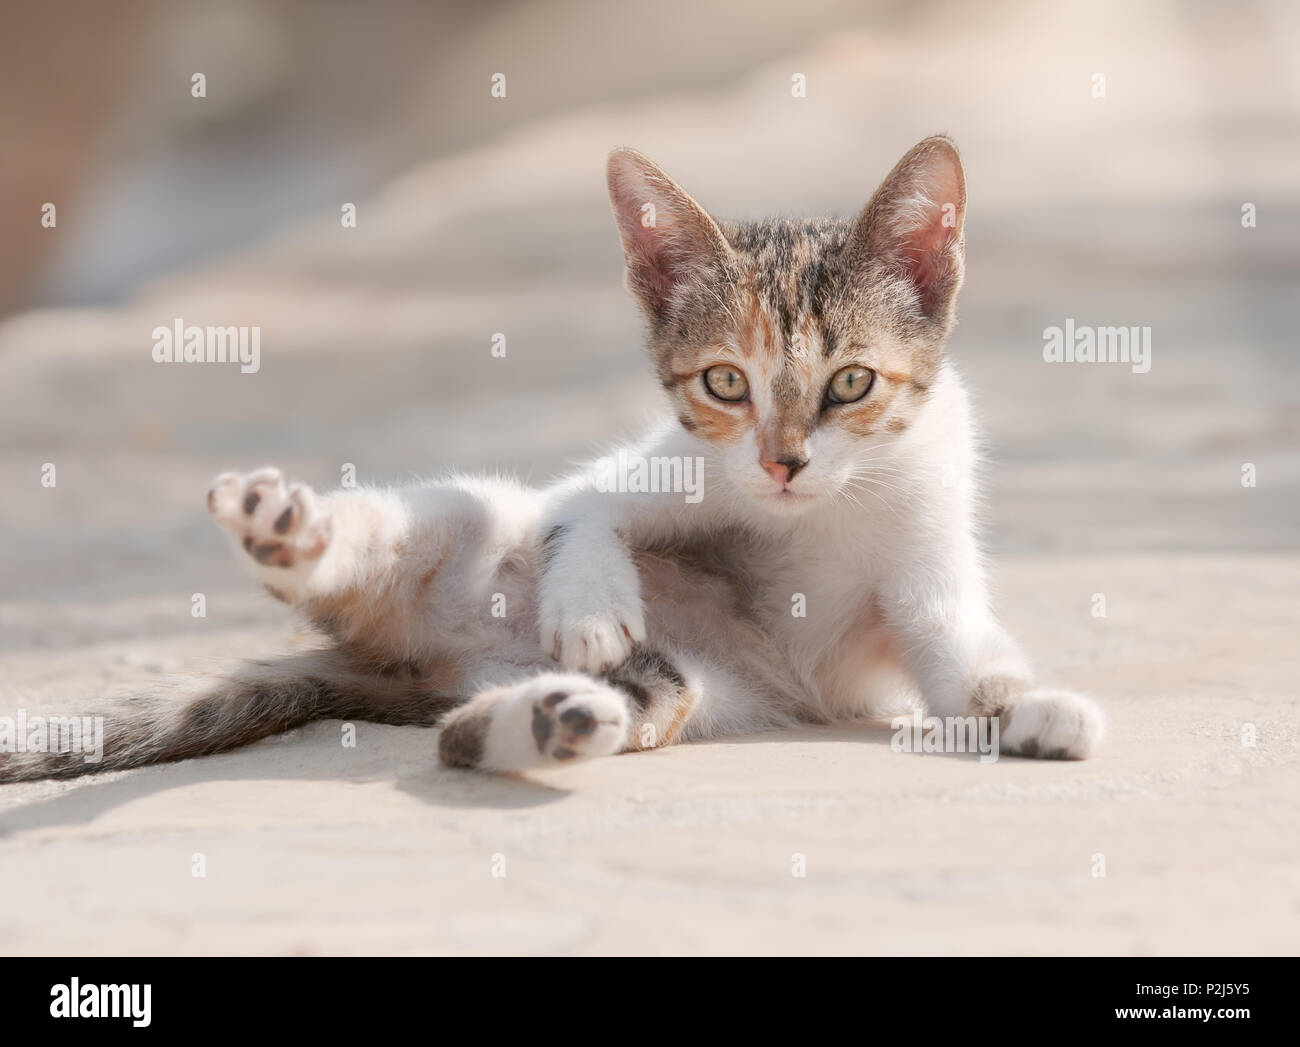 Carino diluire calico tabby baby kitten rotolo attorno scherzosamente sulla sua schiena, espone il suo ventre, Cipro Foto Stock